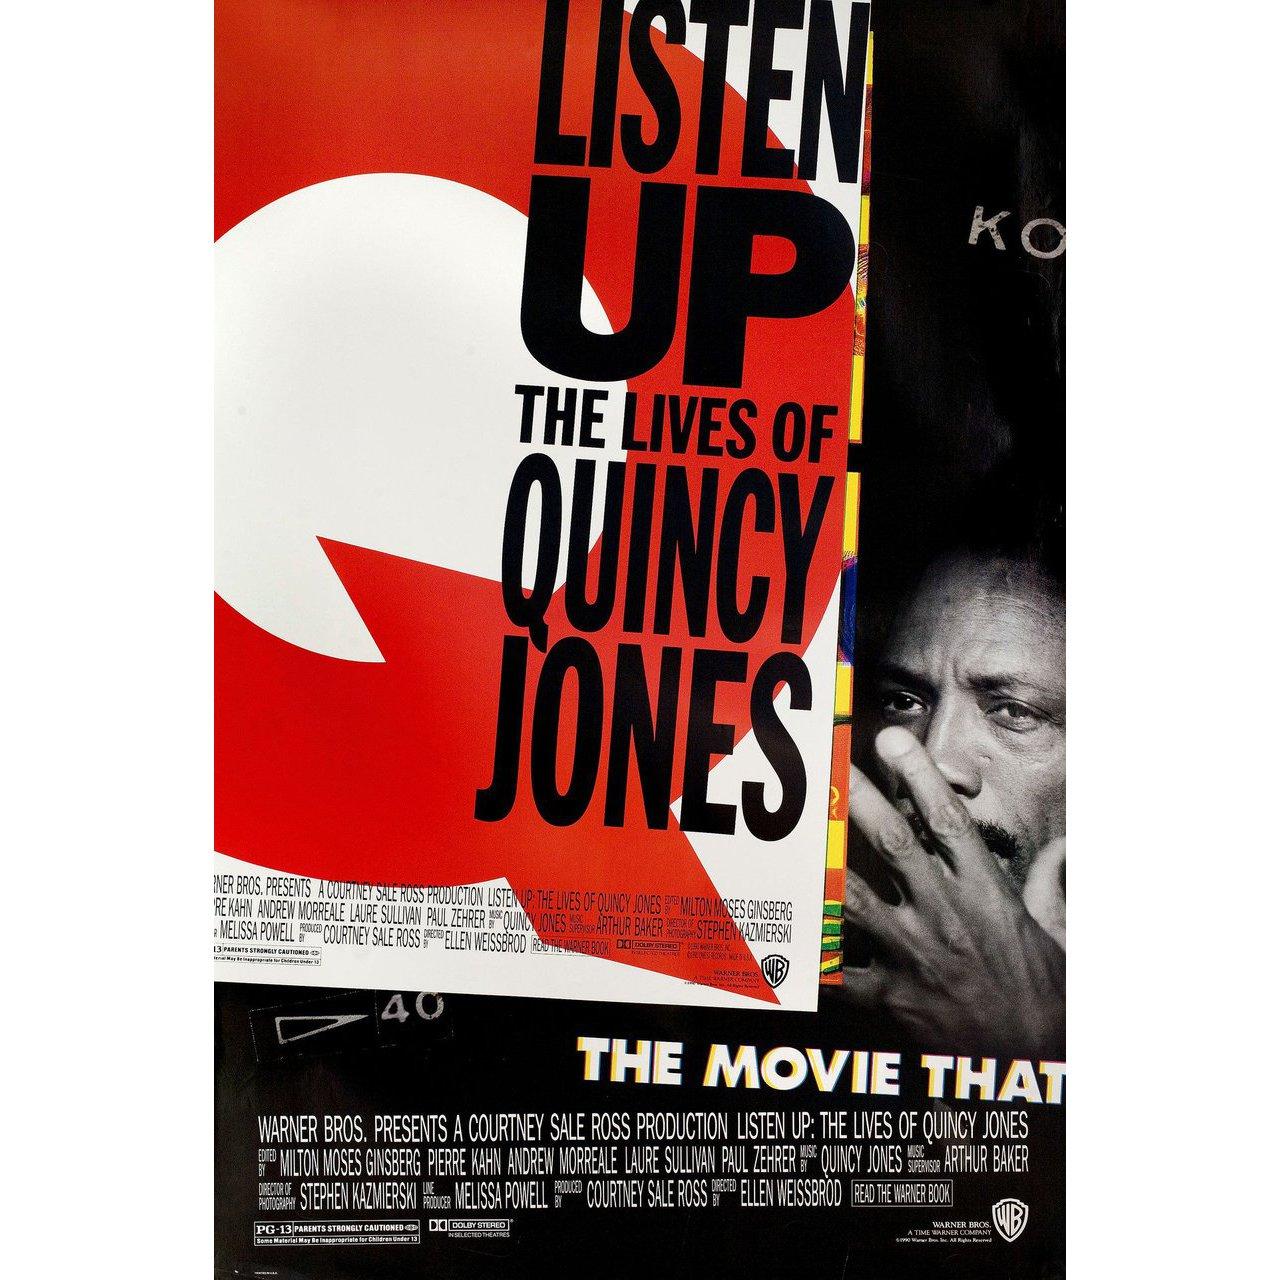 Original US-Plakat von 1990 für den Dokumentarfilm Listen Up: The Lives of Quincy Jones, Regie: Ellen Weissbrod, mit Clarence Avant / George Benson / Richard Brooks / Tevin Campbell. Sehr guter bis sehr guter Zustand, gerollt. Bitte beachten Sie: